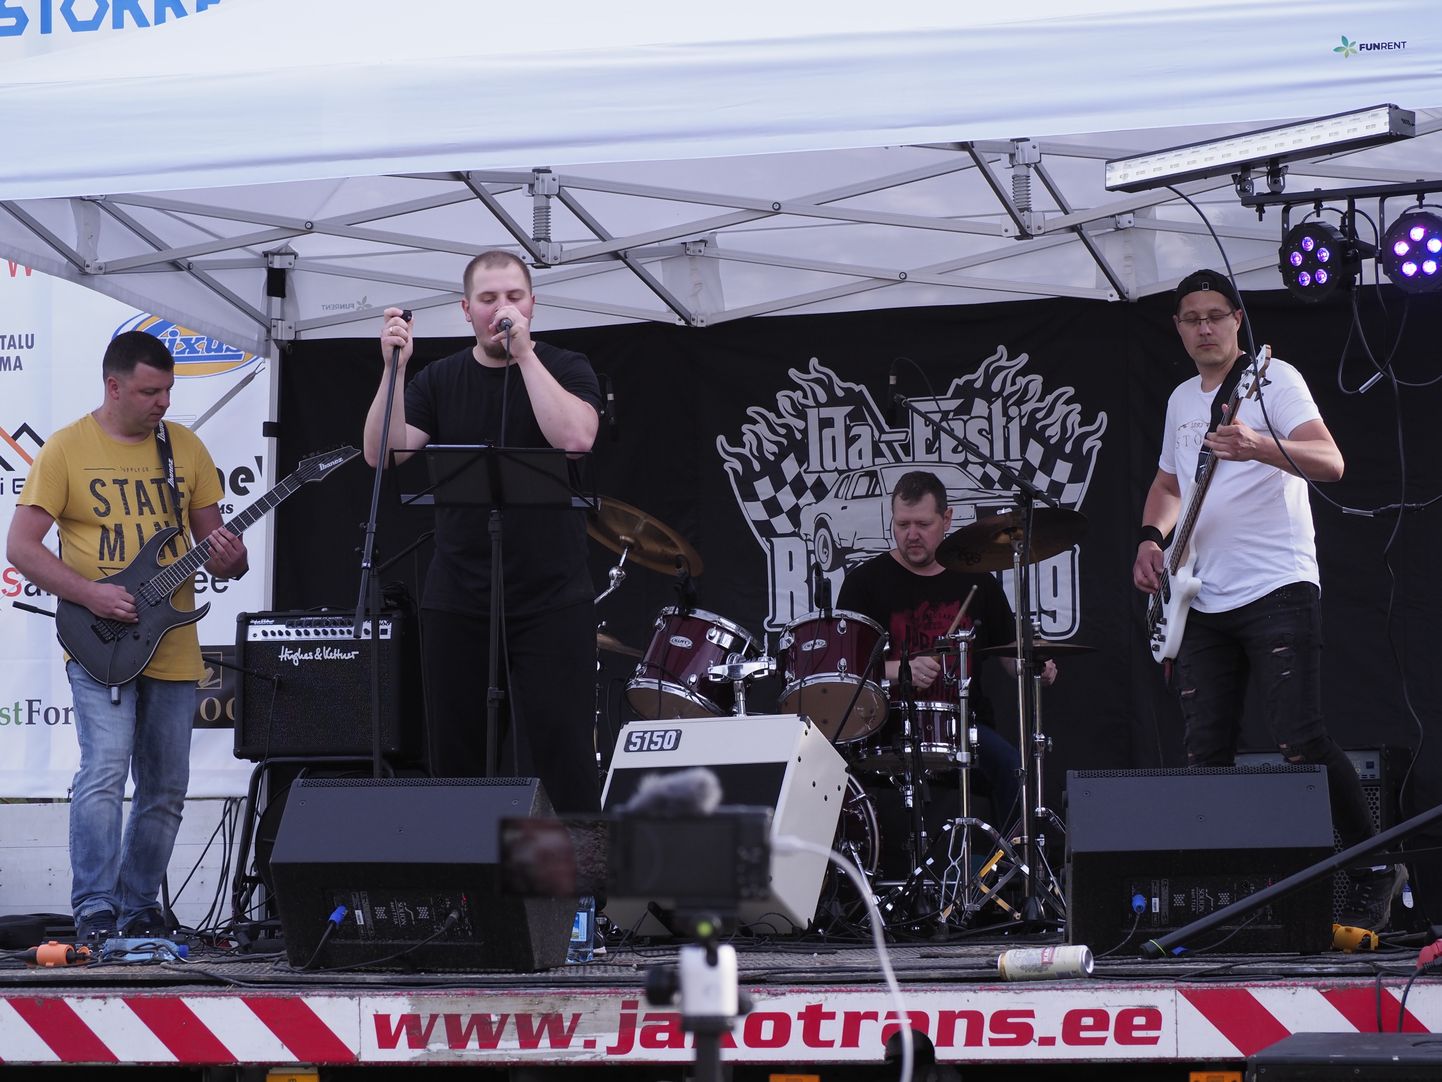 Группа "JESA" выступала в прошлую субботу в Йыхви, а в предстоящую ее можно услышать в Кохтла-Ярве.